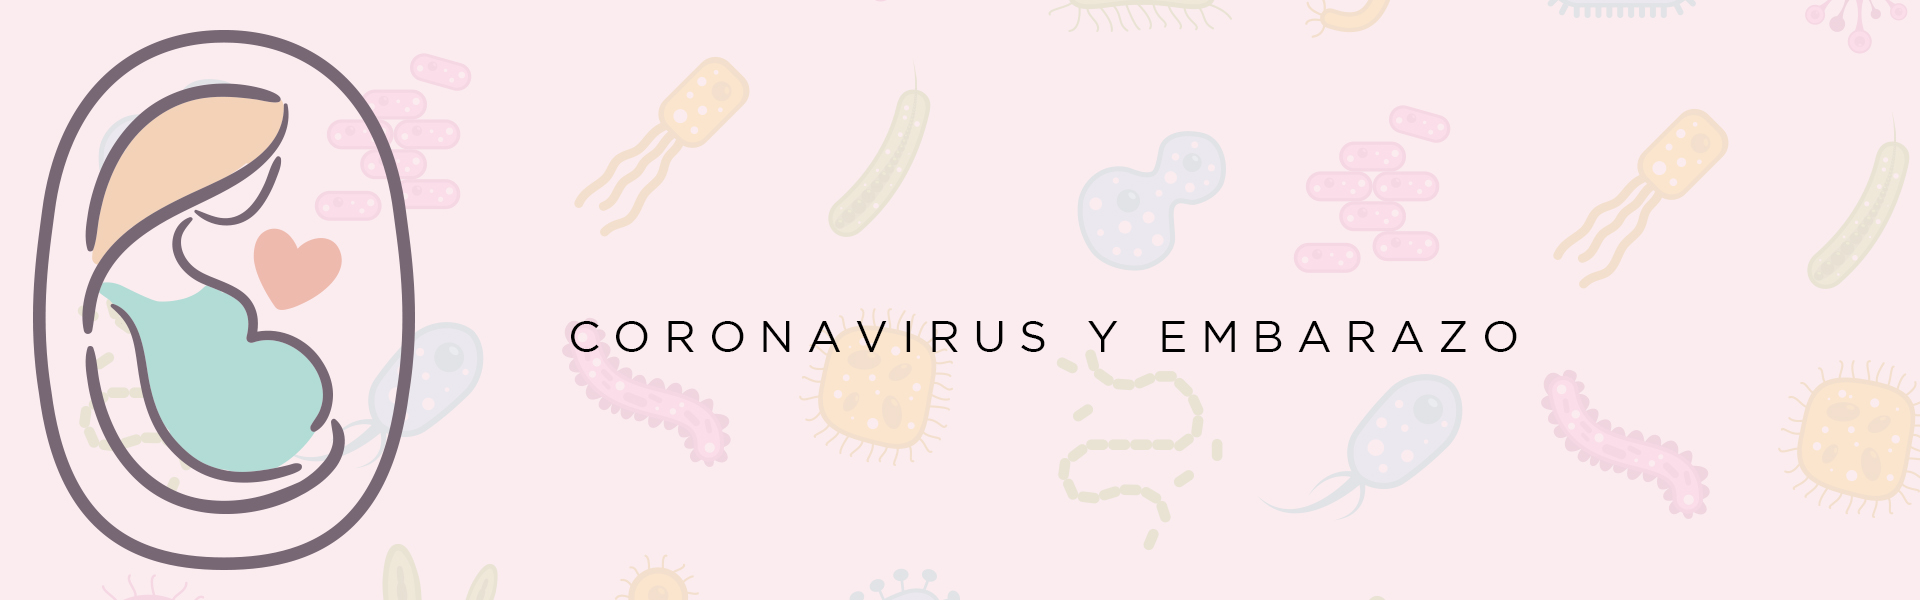 coronavirus_embarazo